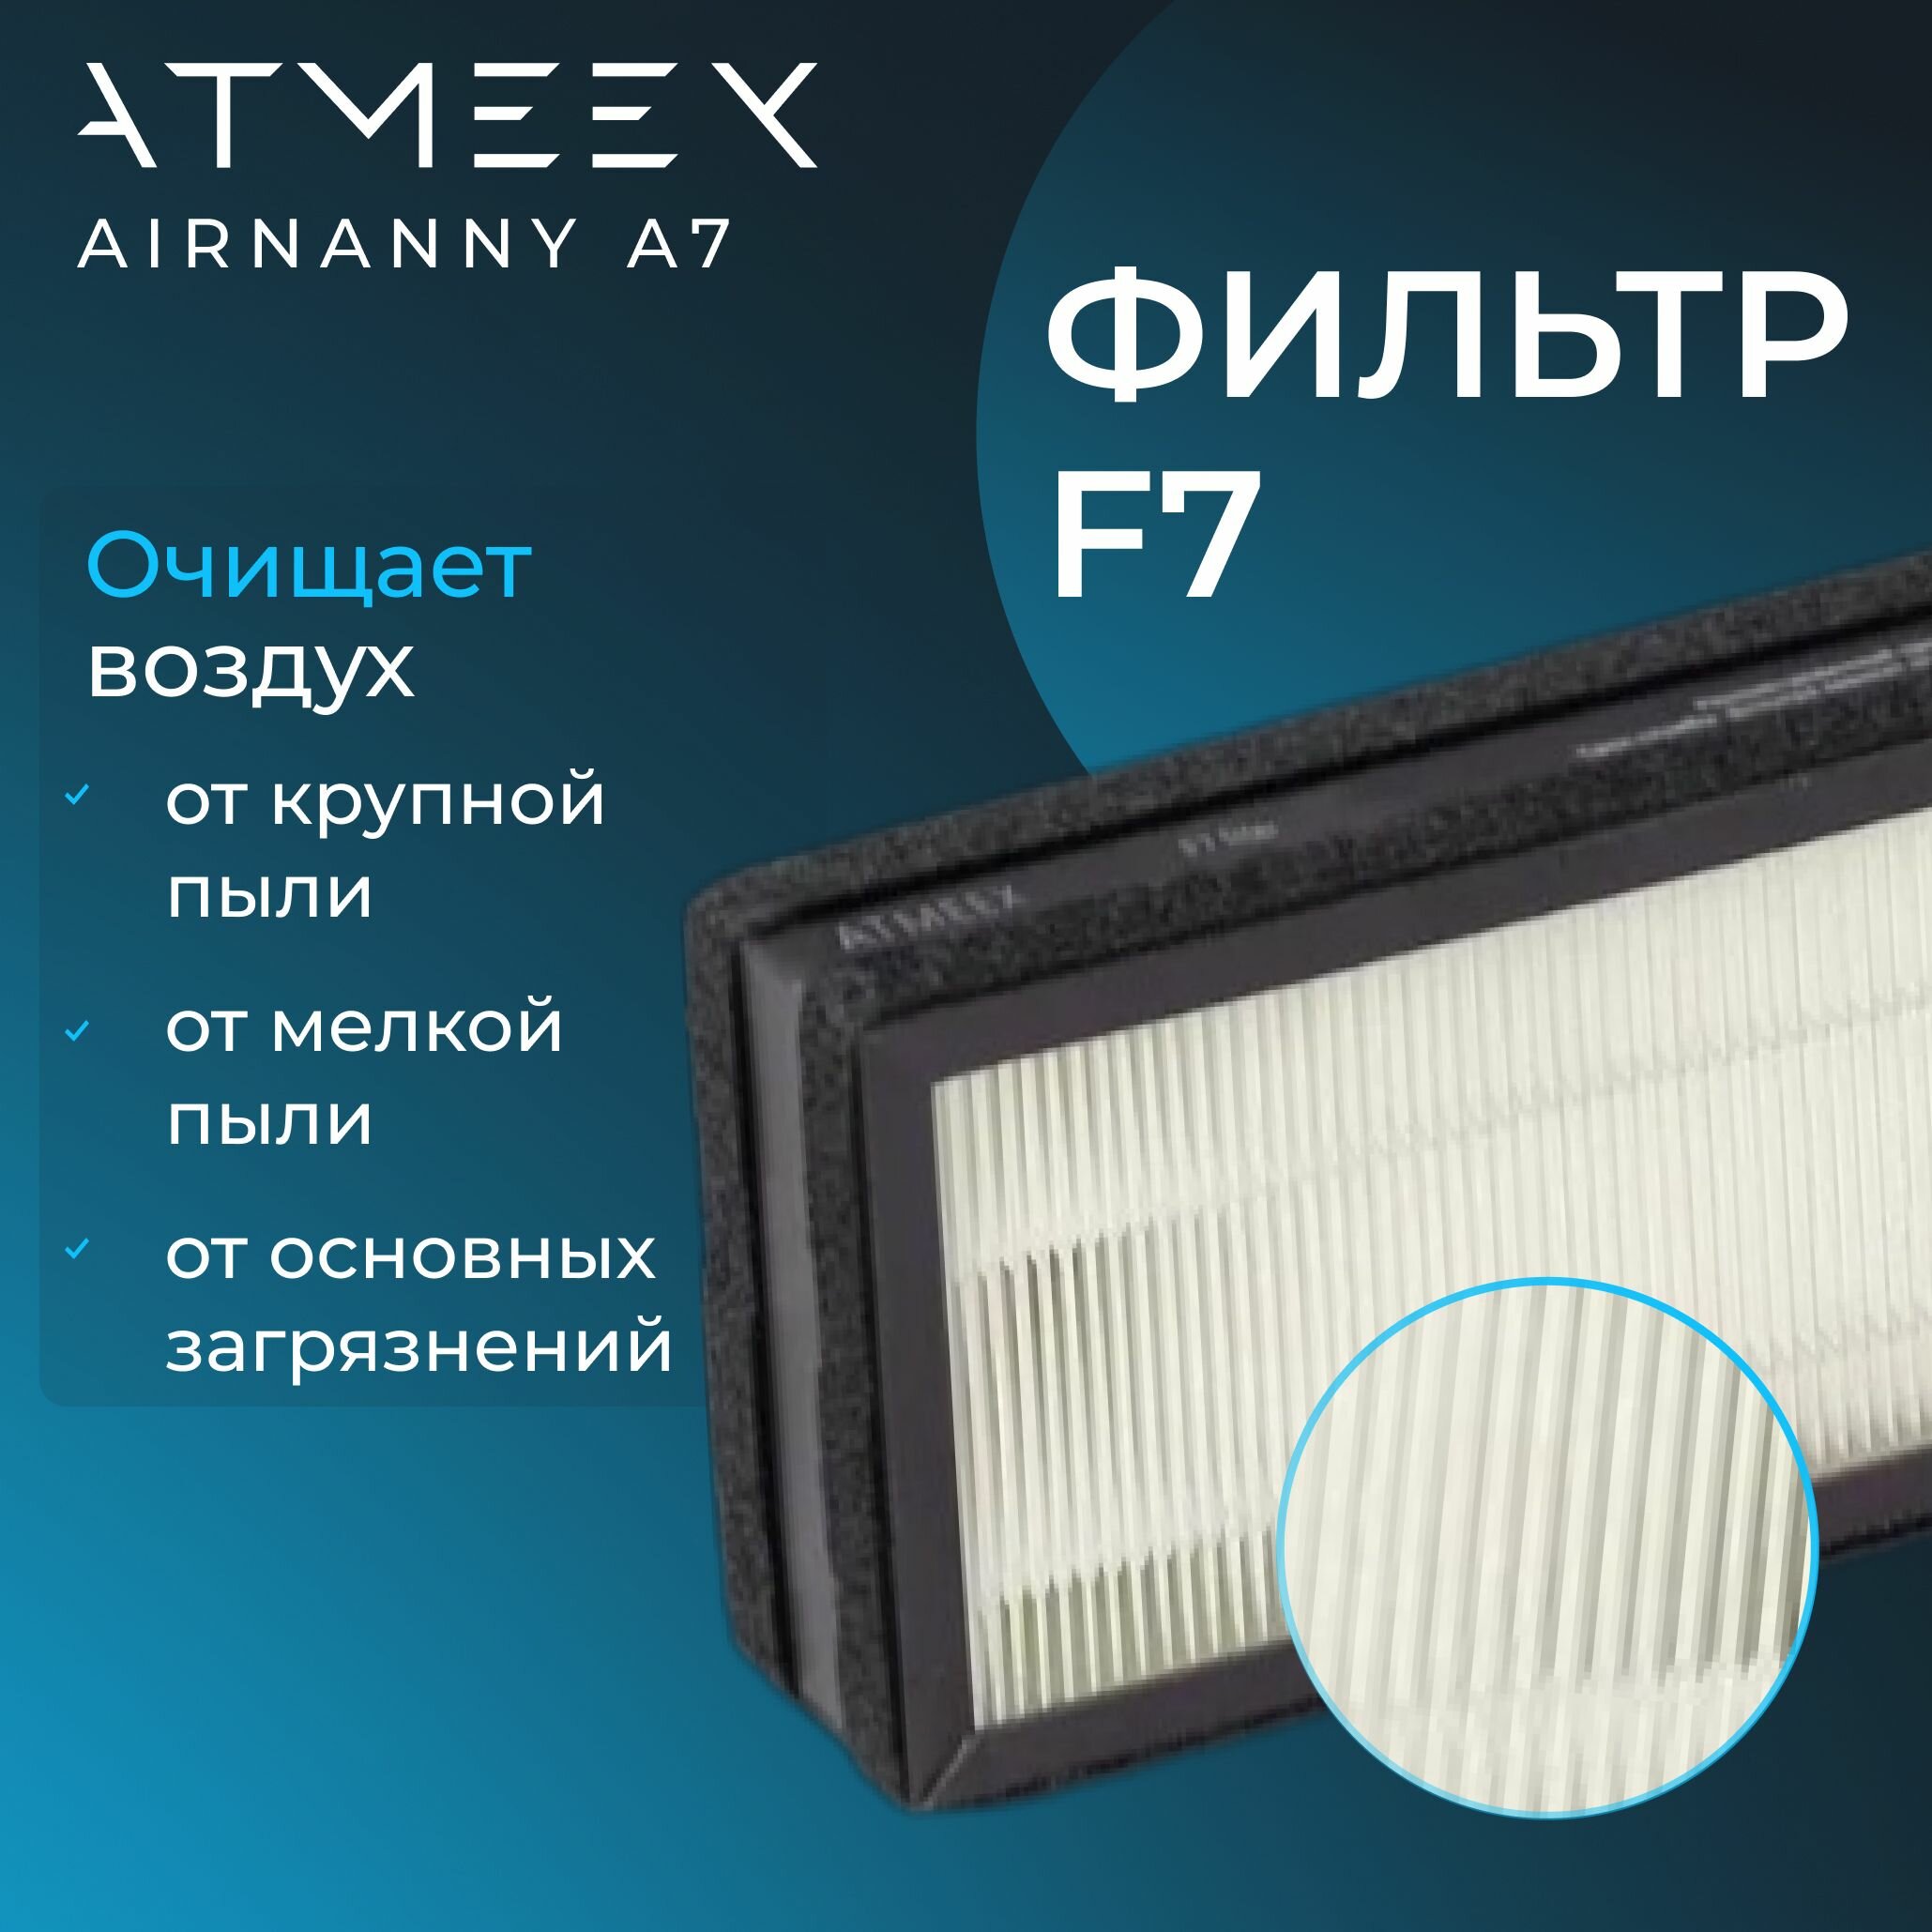 Фильтр средней очистки воздуха ATMEEX F7 для AIRNANNY A7